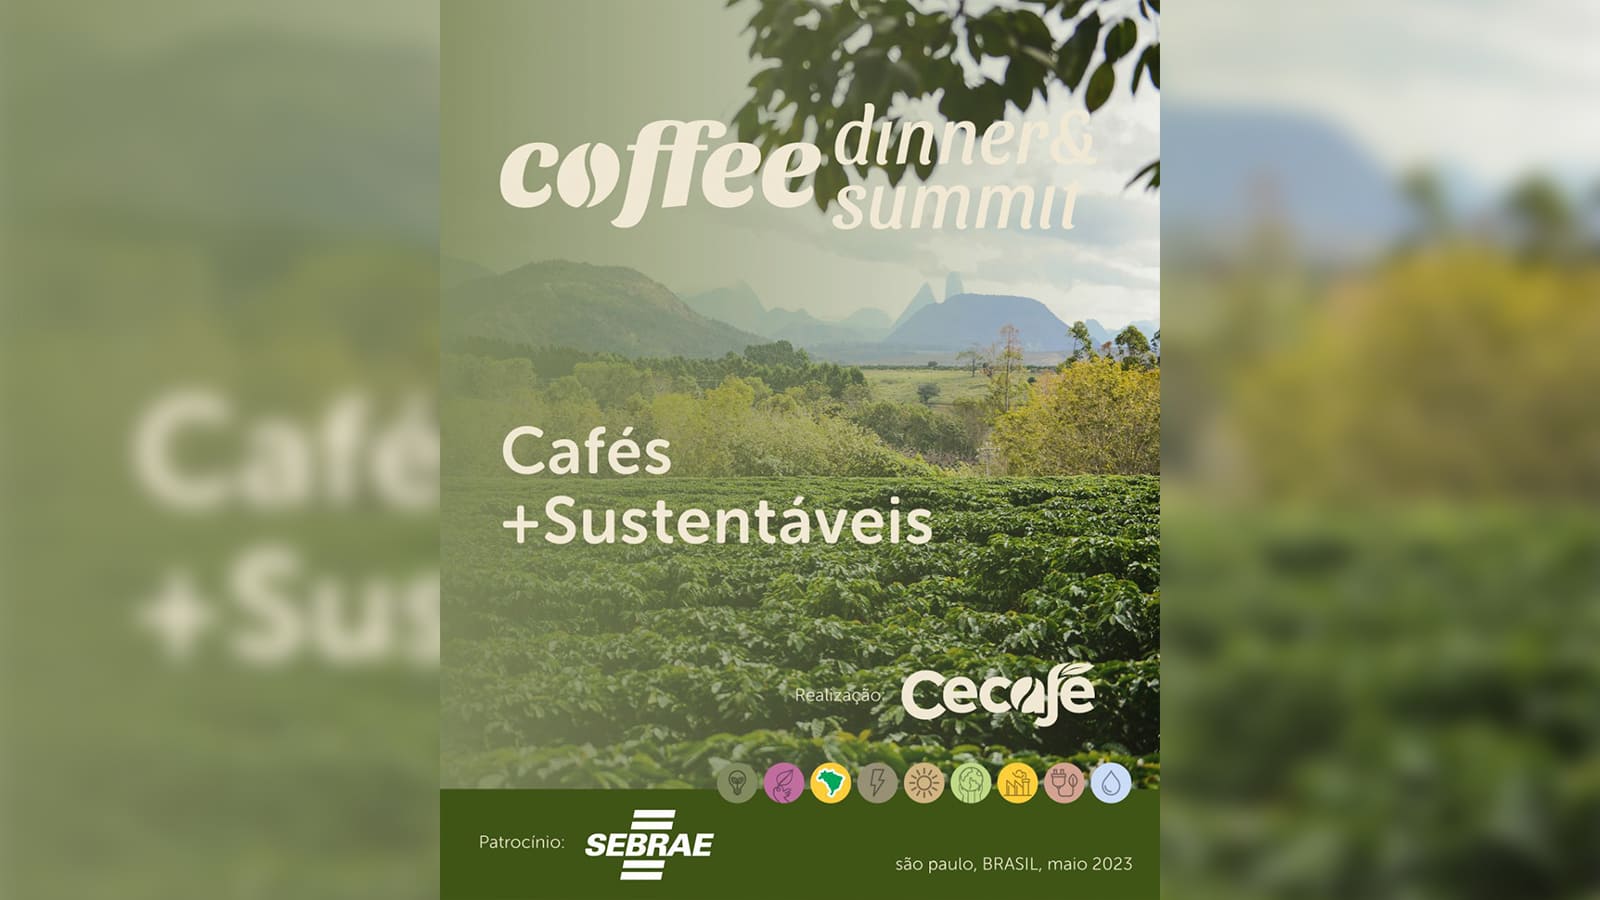 Cafeicultura-brasileira-deseja-que-o-mundo-demande-com-mais-sustentabilidade